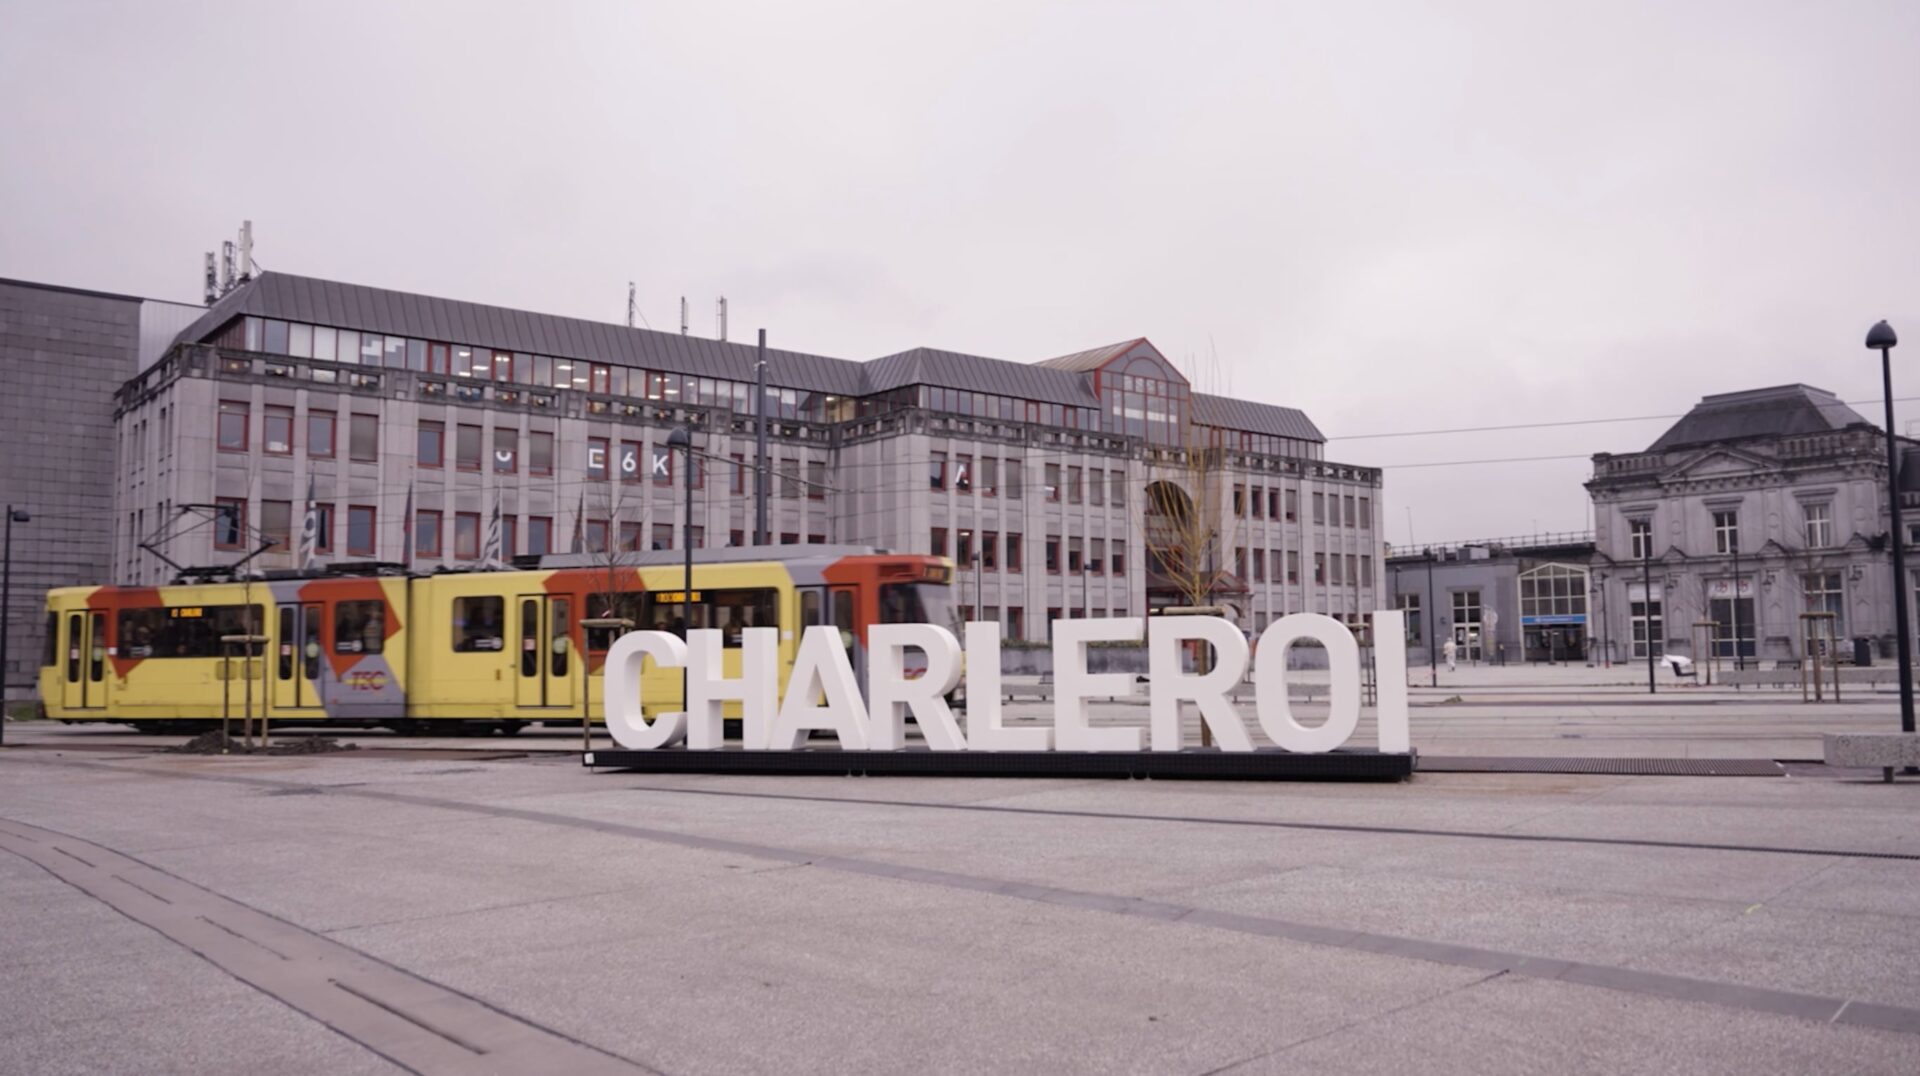 Réalisation de vidéo d'entreprise pour Charleroi Biopark